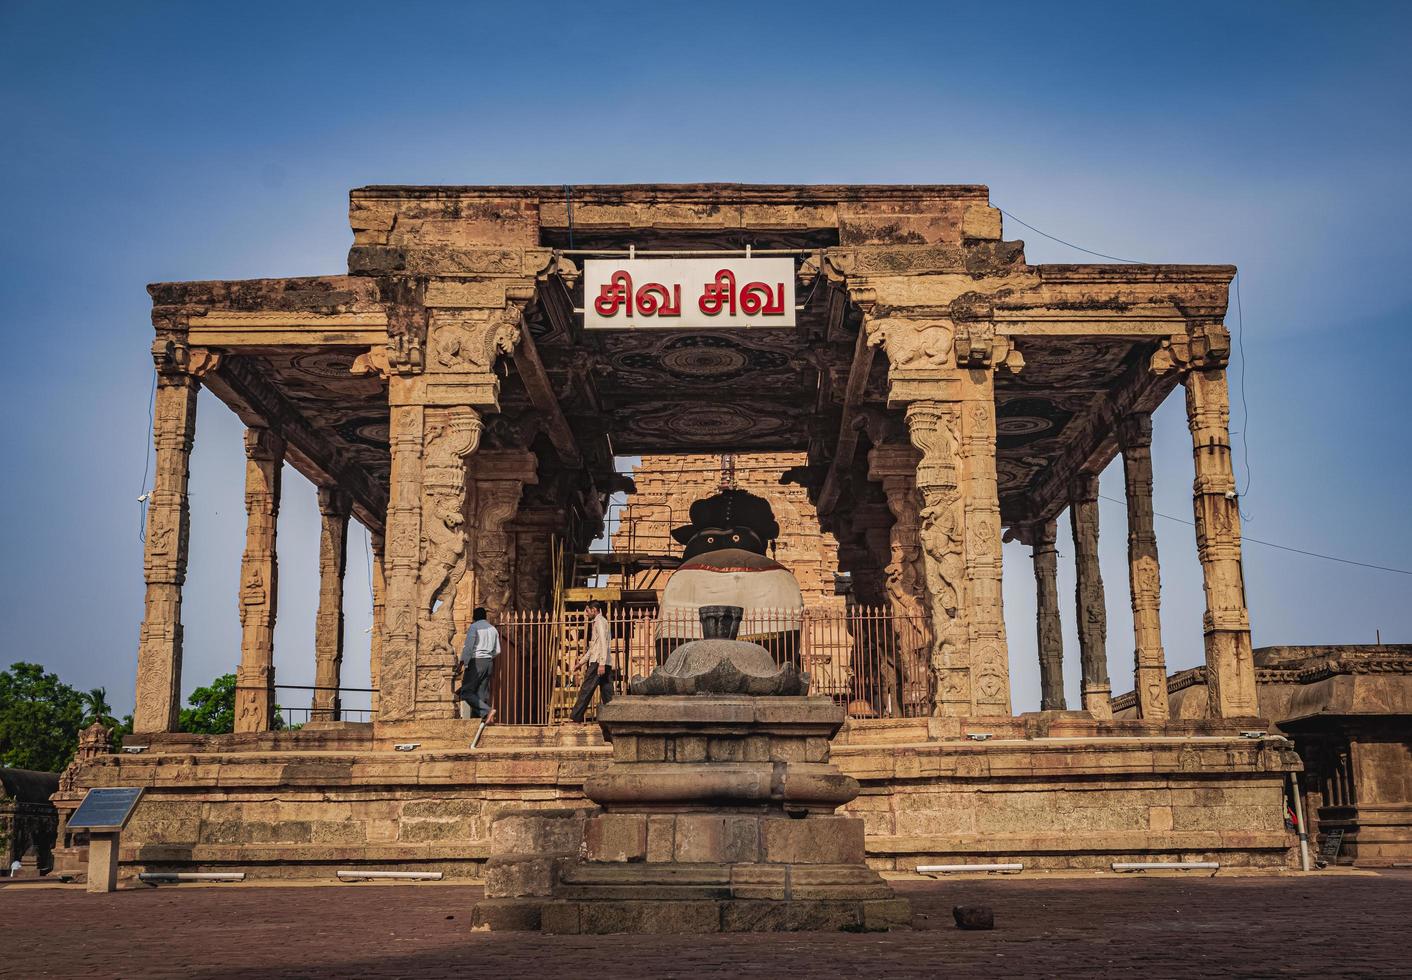 tanjore grande templo ou templo brihadeshwara foi construído pelo rei raja raja cholan em thanjavur, tamil nadu. é o templo mais antigo e mais alto da Índia. este templo listado no patrimônio da unescos foto